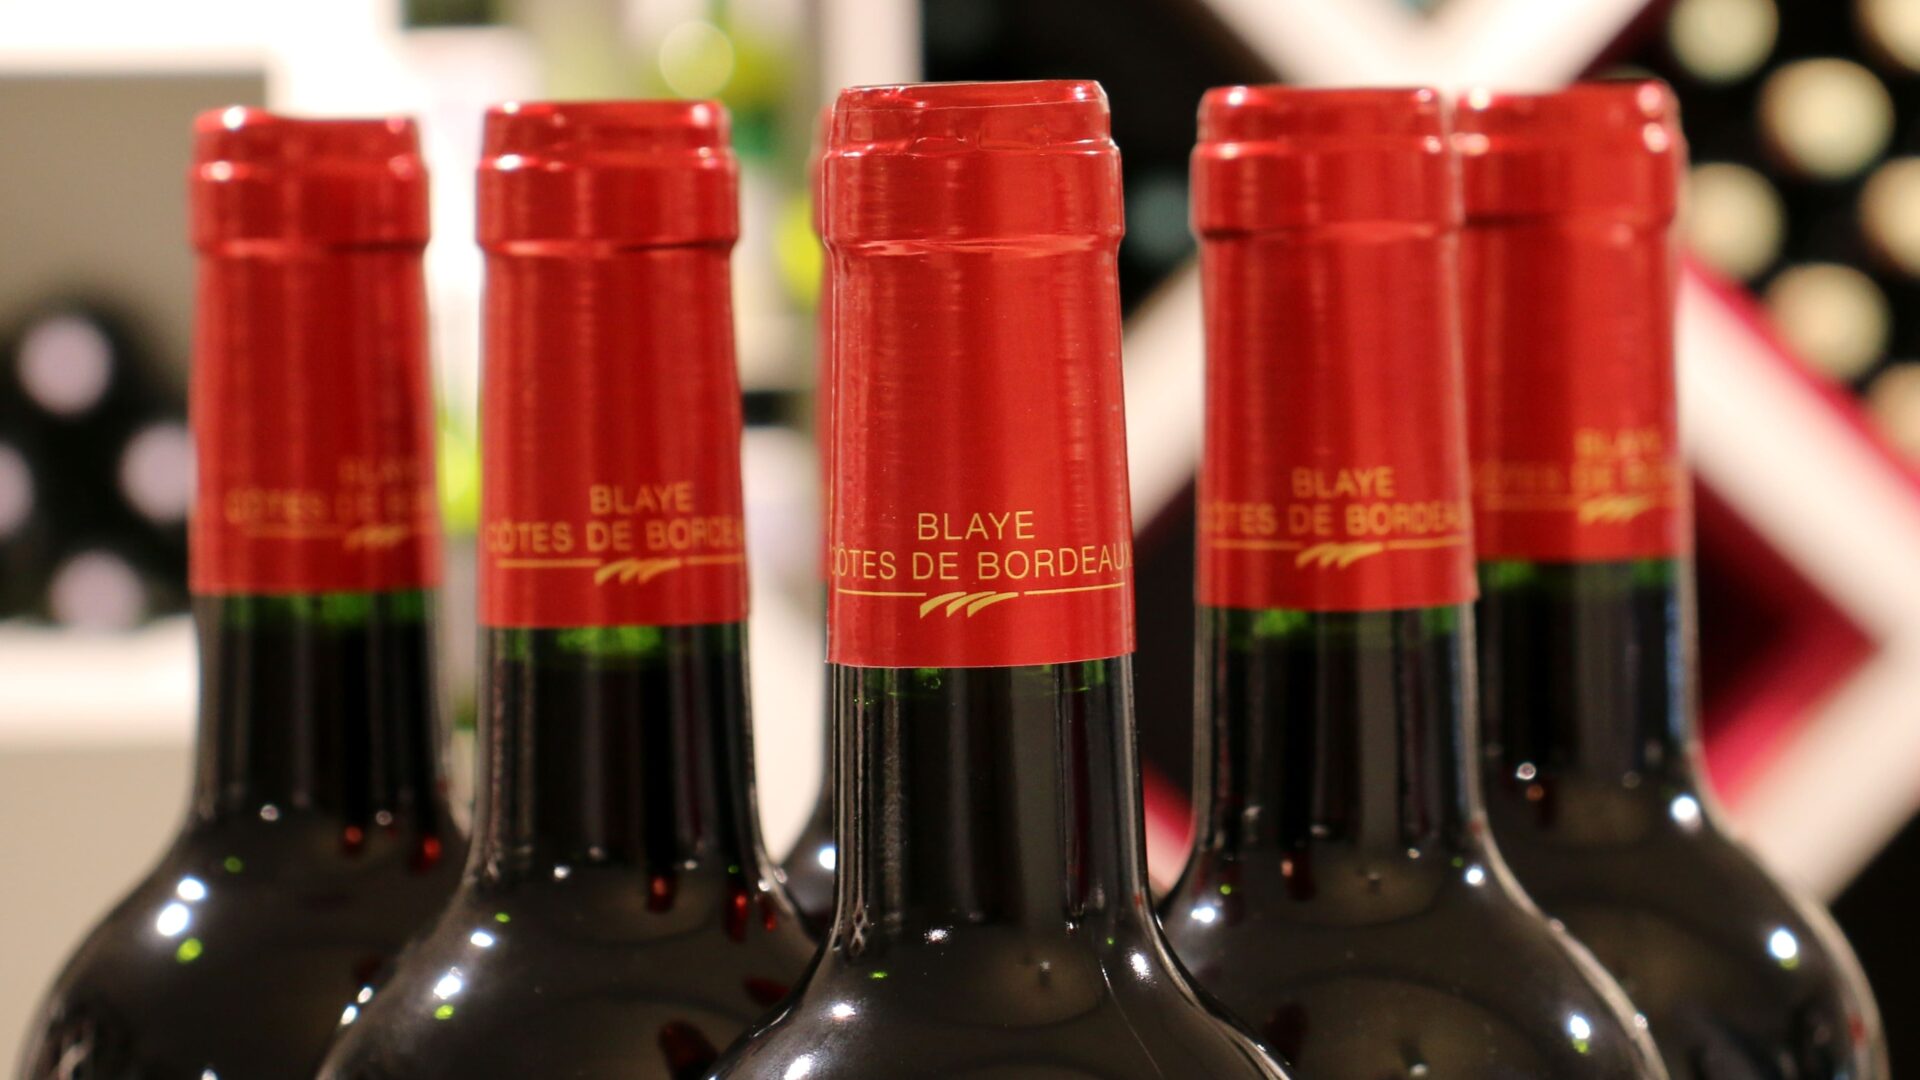 Gagnez 12 bouteilles de Blaye Côtes de Bordeaux